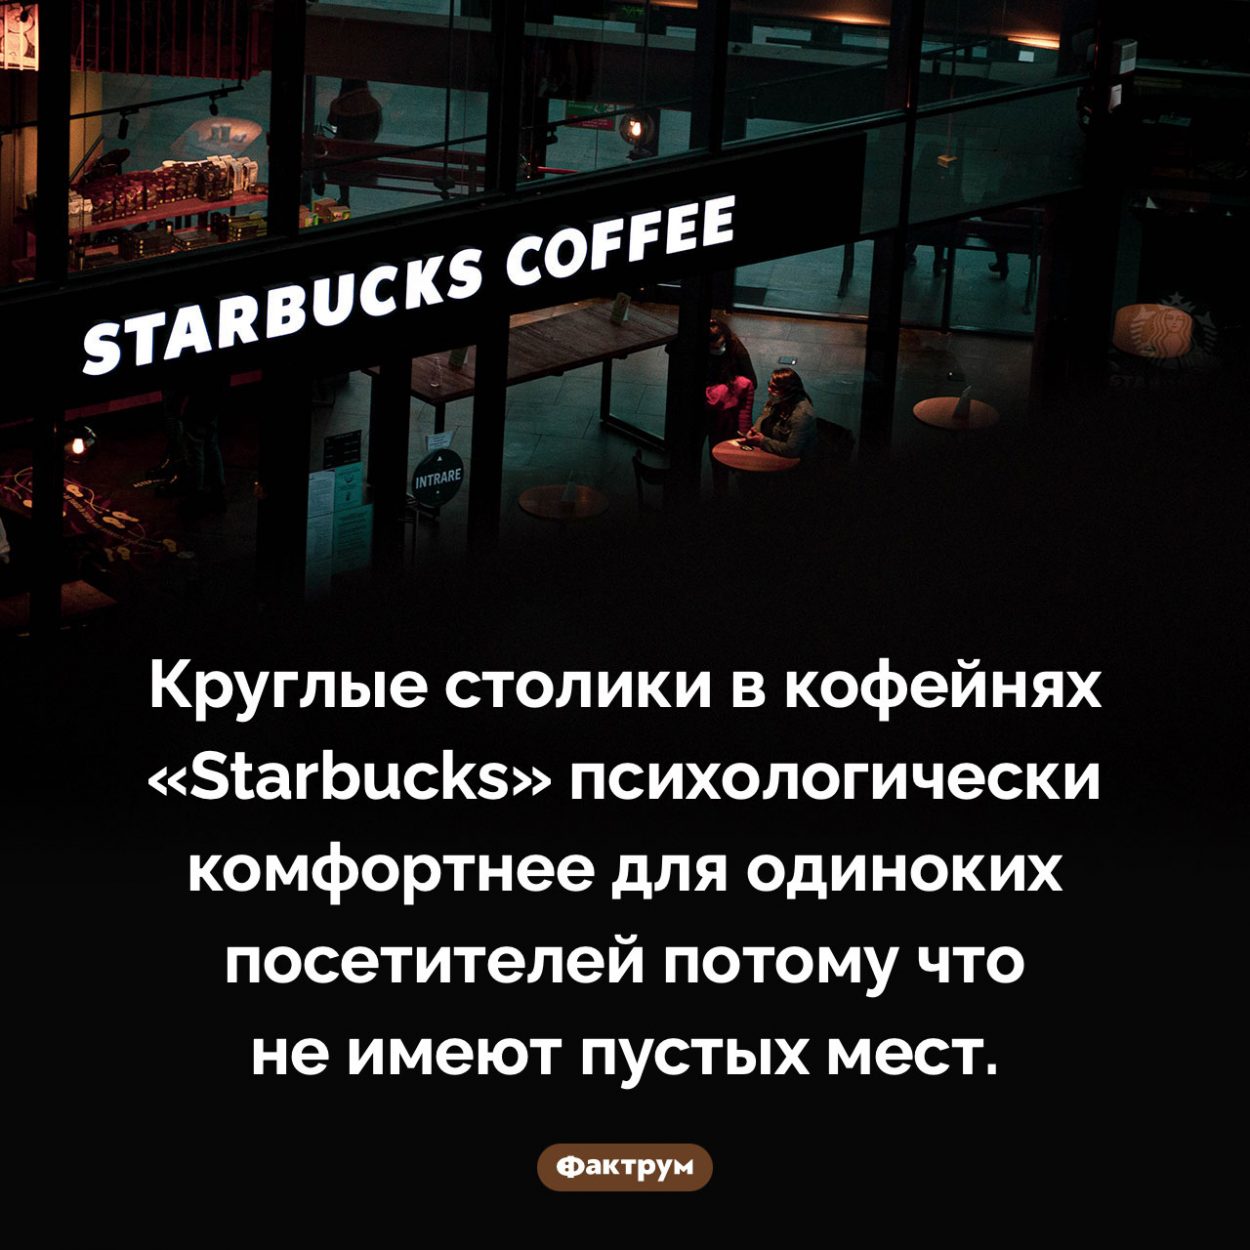 Почему в кофейнях «Starbucks» круглые столики. Круглые столики в кофейнях «Starbucks» психологически комфортнее для одиноких посетителей потому что не имеют пустых мест.